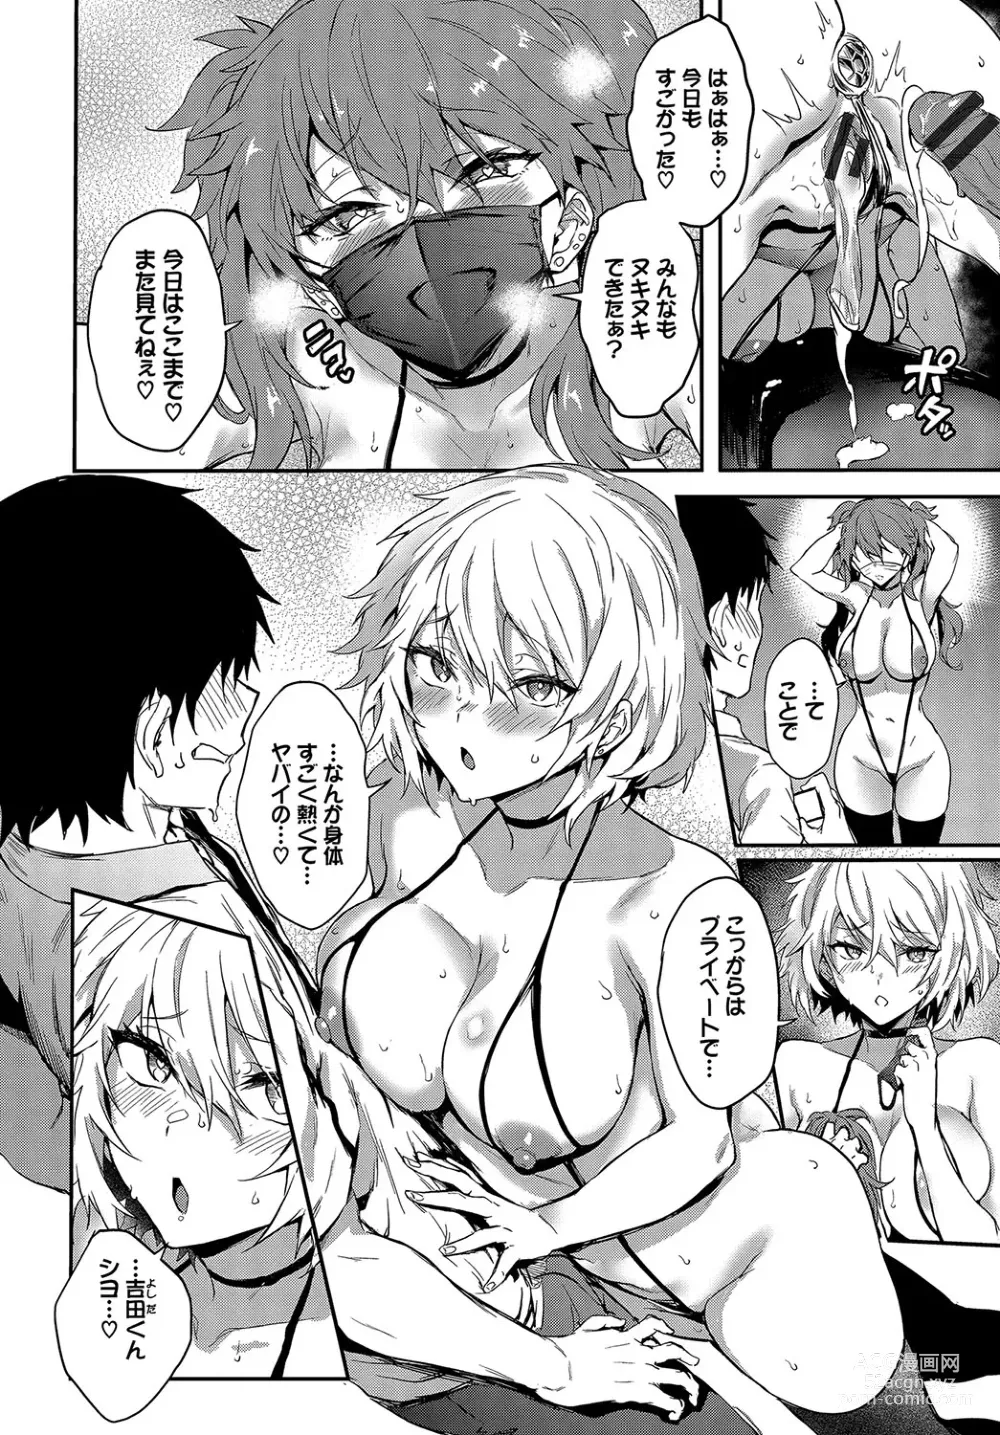 Page 199 of manga Bitch Bitch